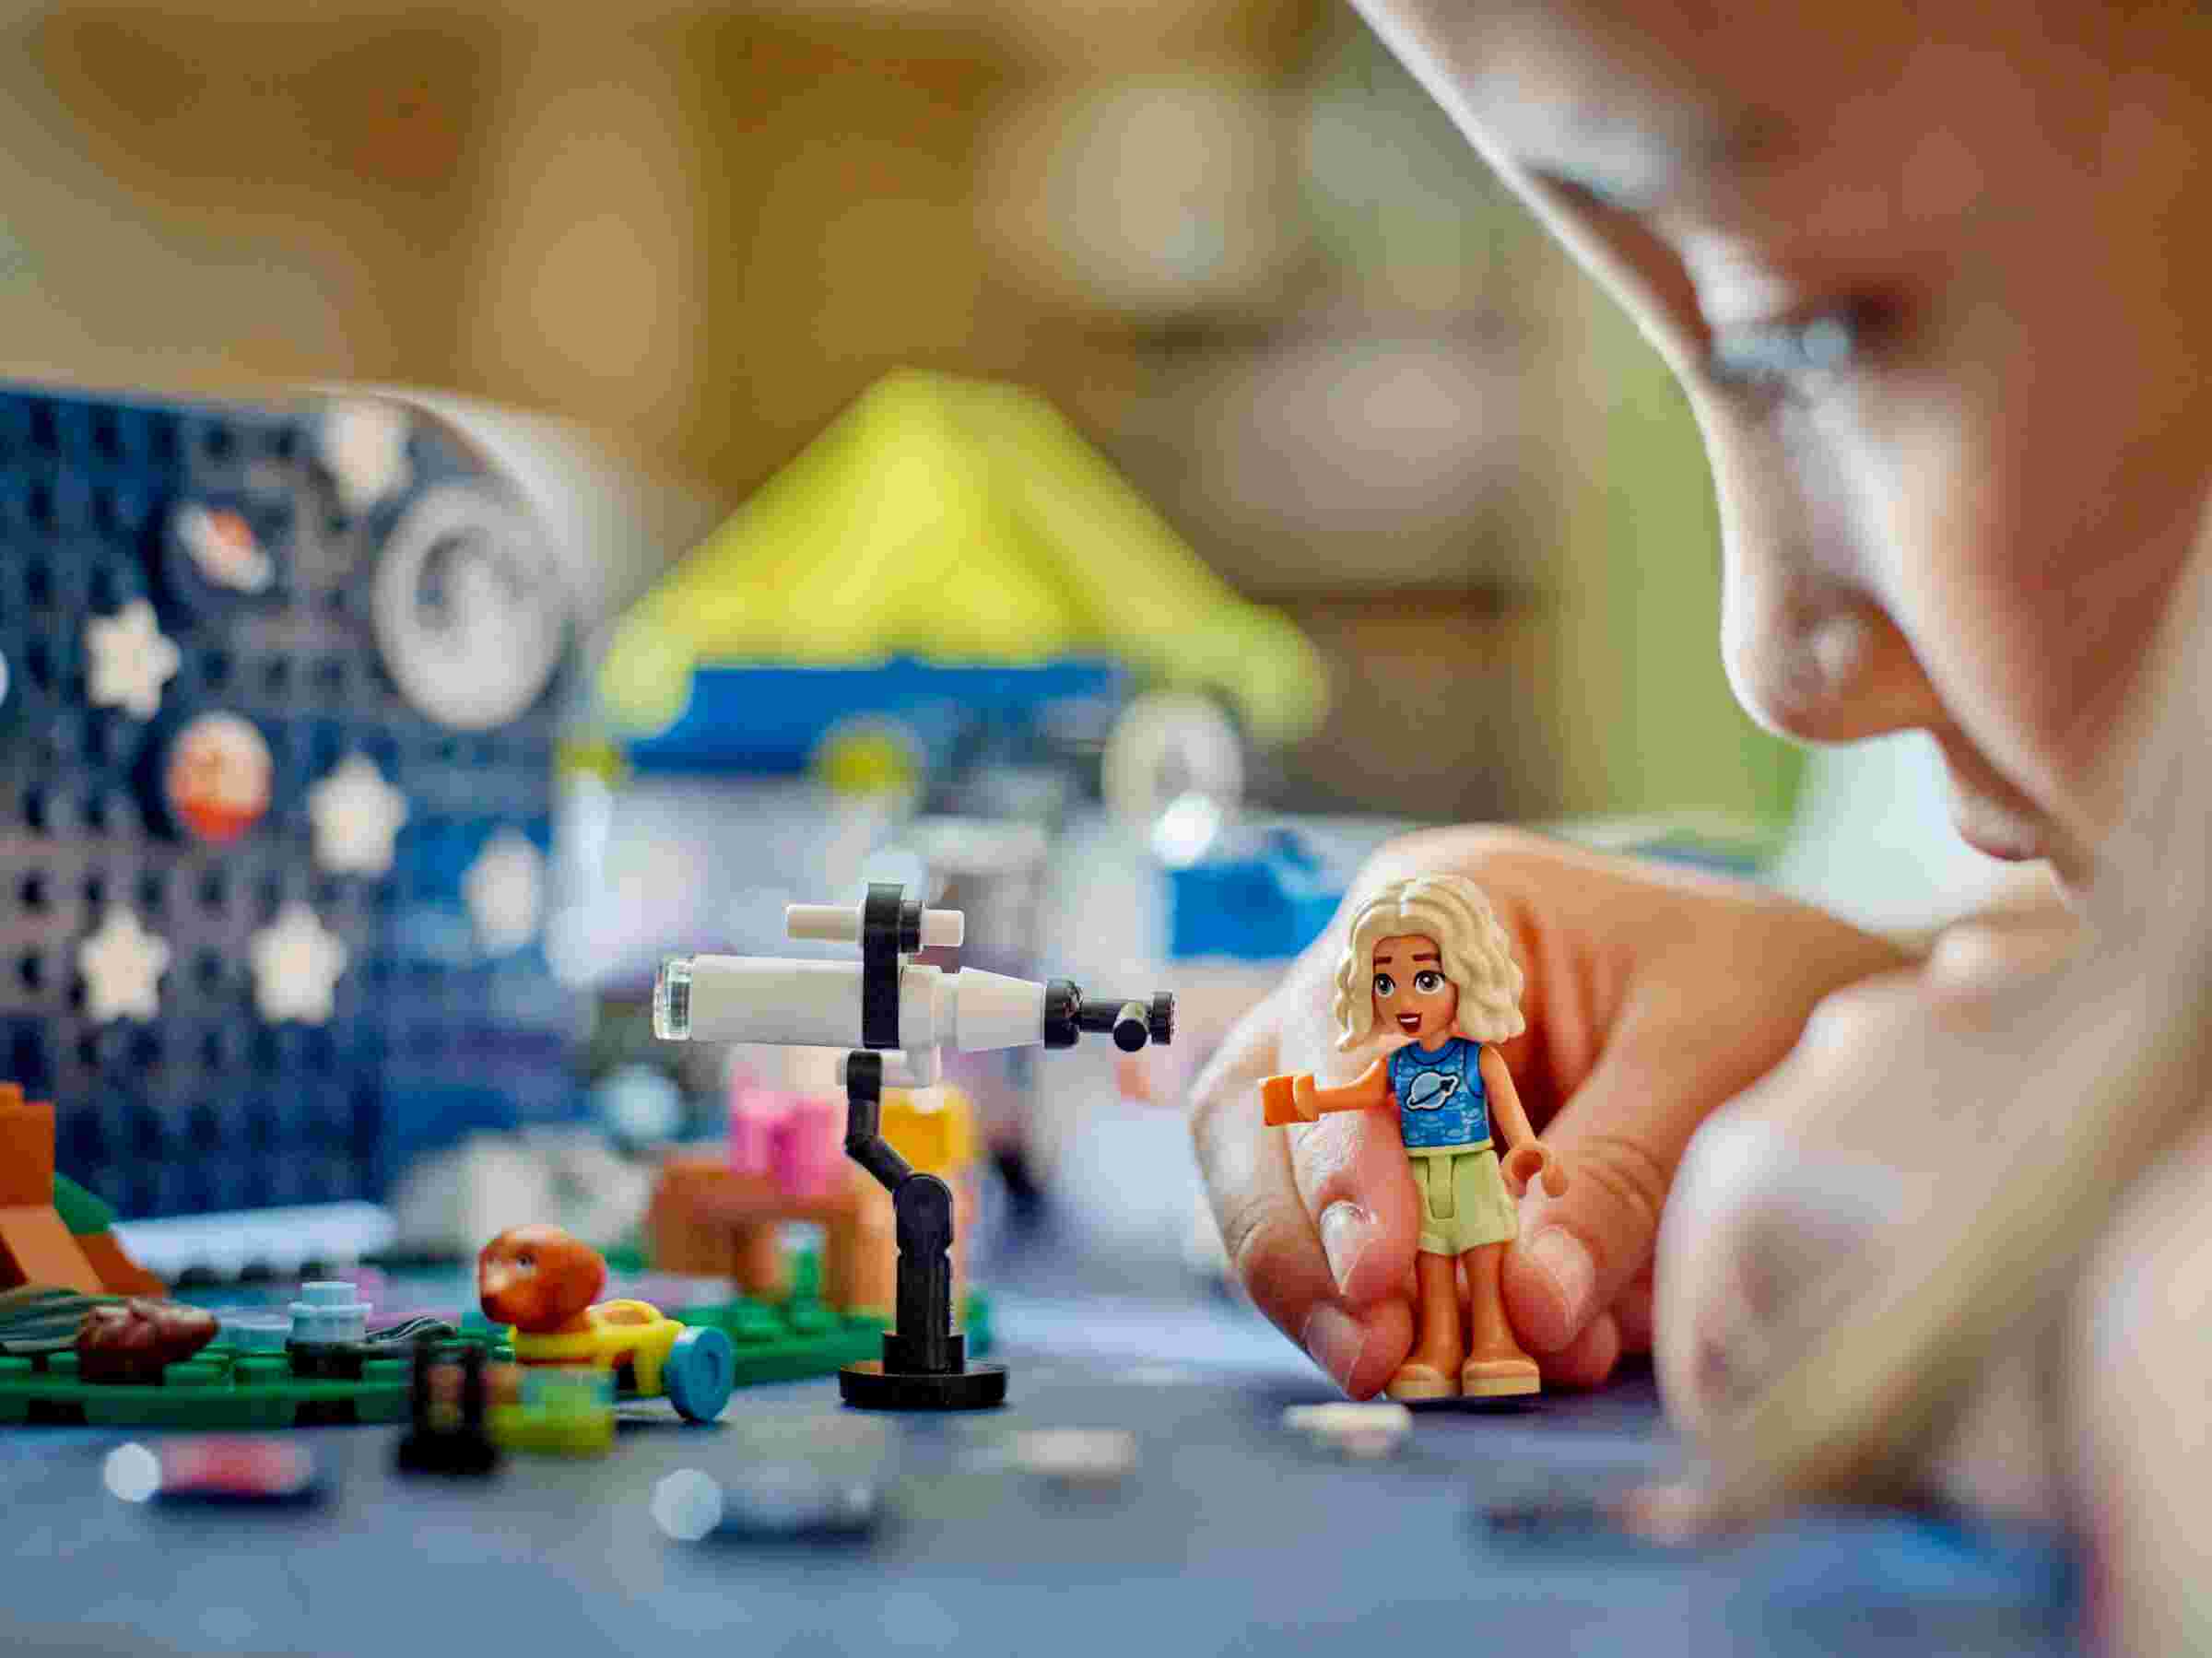 LEGO 42603 Friends Sterngucker-Campingfahrzeug, 2 Spielfiguren und 2 Tiere